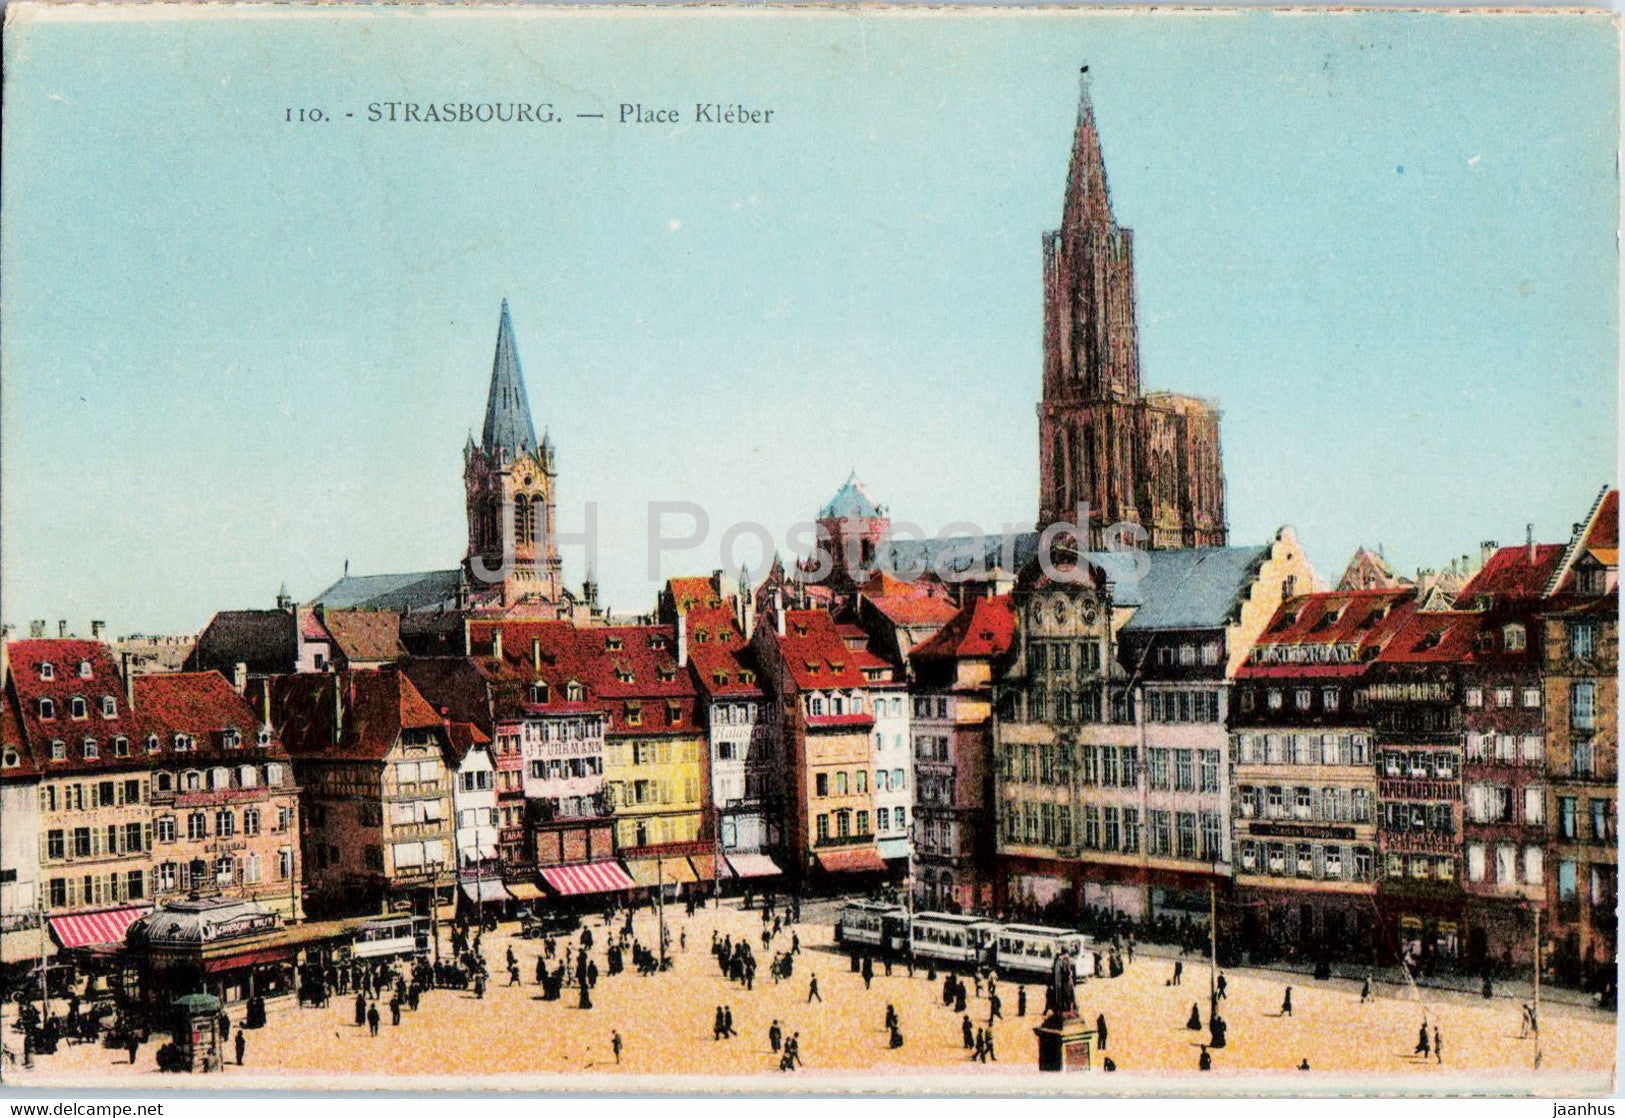 Strasbourg - Strassburg - Place Kleber - 110 - old postcard - France - unused - JH Postcards